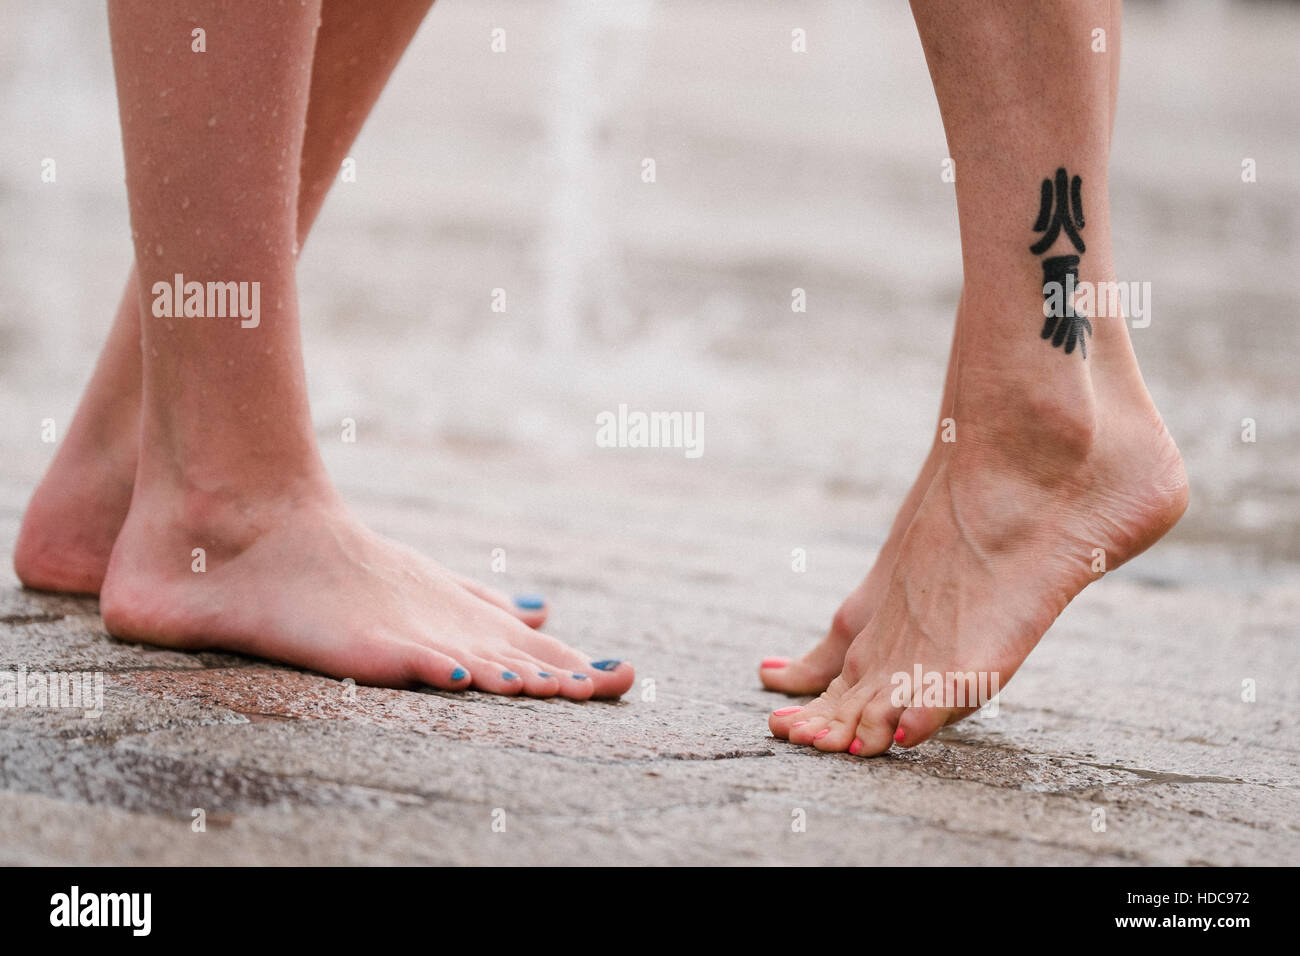 Farbe, Bild von zwei Frauen Beine und Füße, die den Eindruck, dass sie küssen oder einander umarmen. Stockfoto